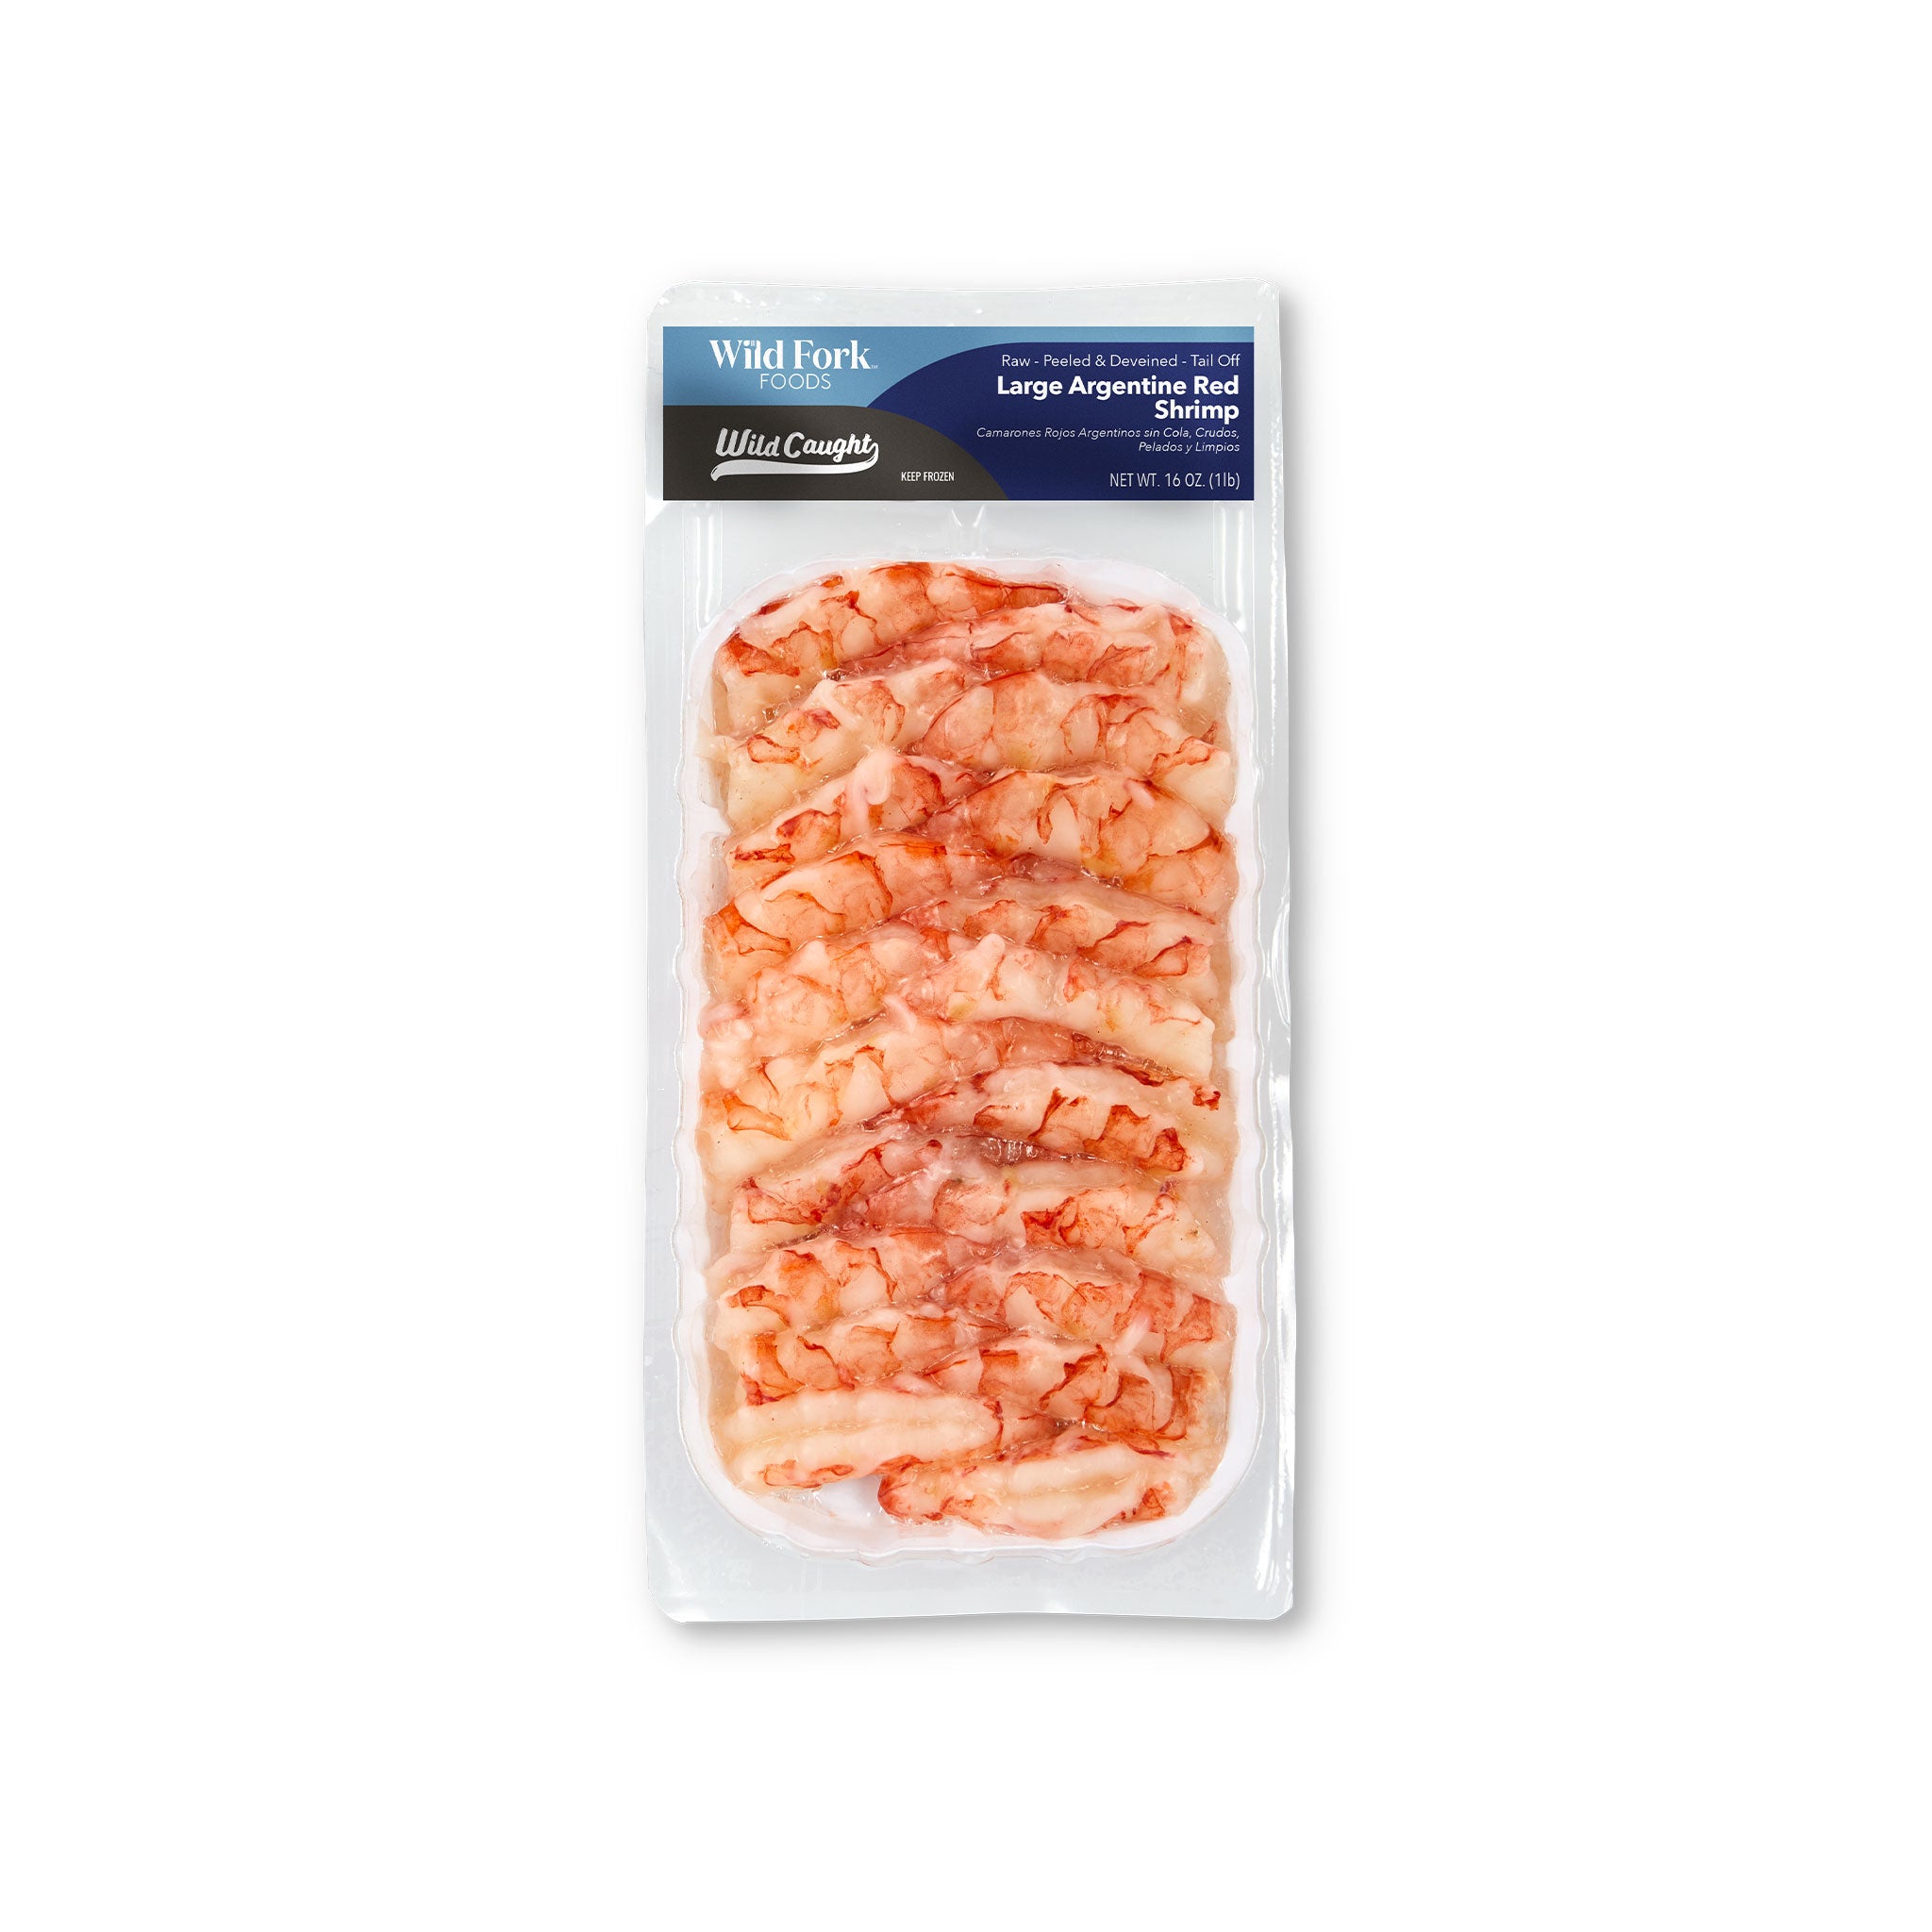 Argentine Red Shrimp – Wild Fork Foods